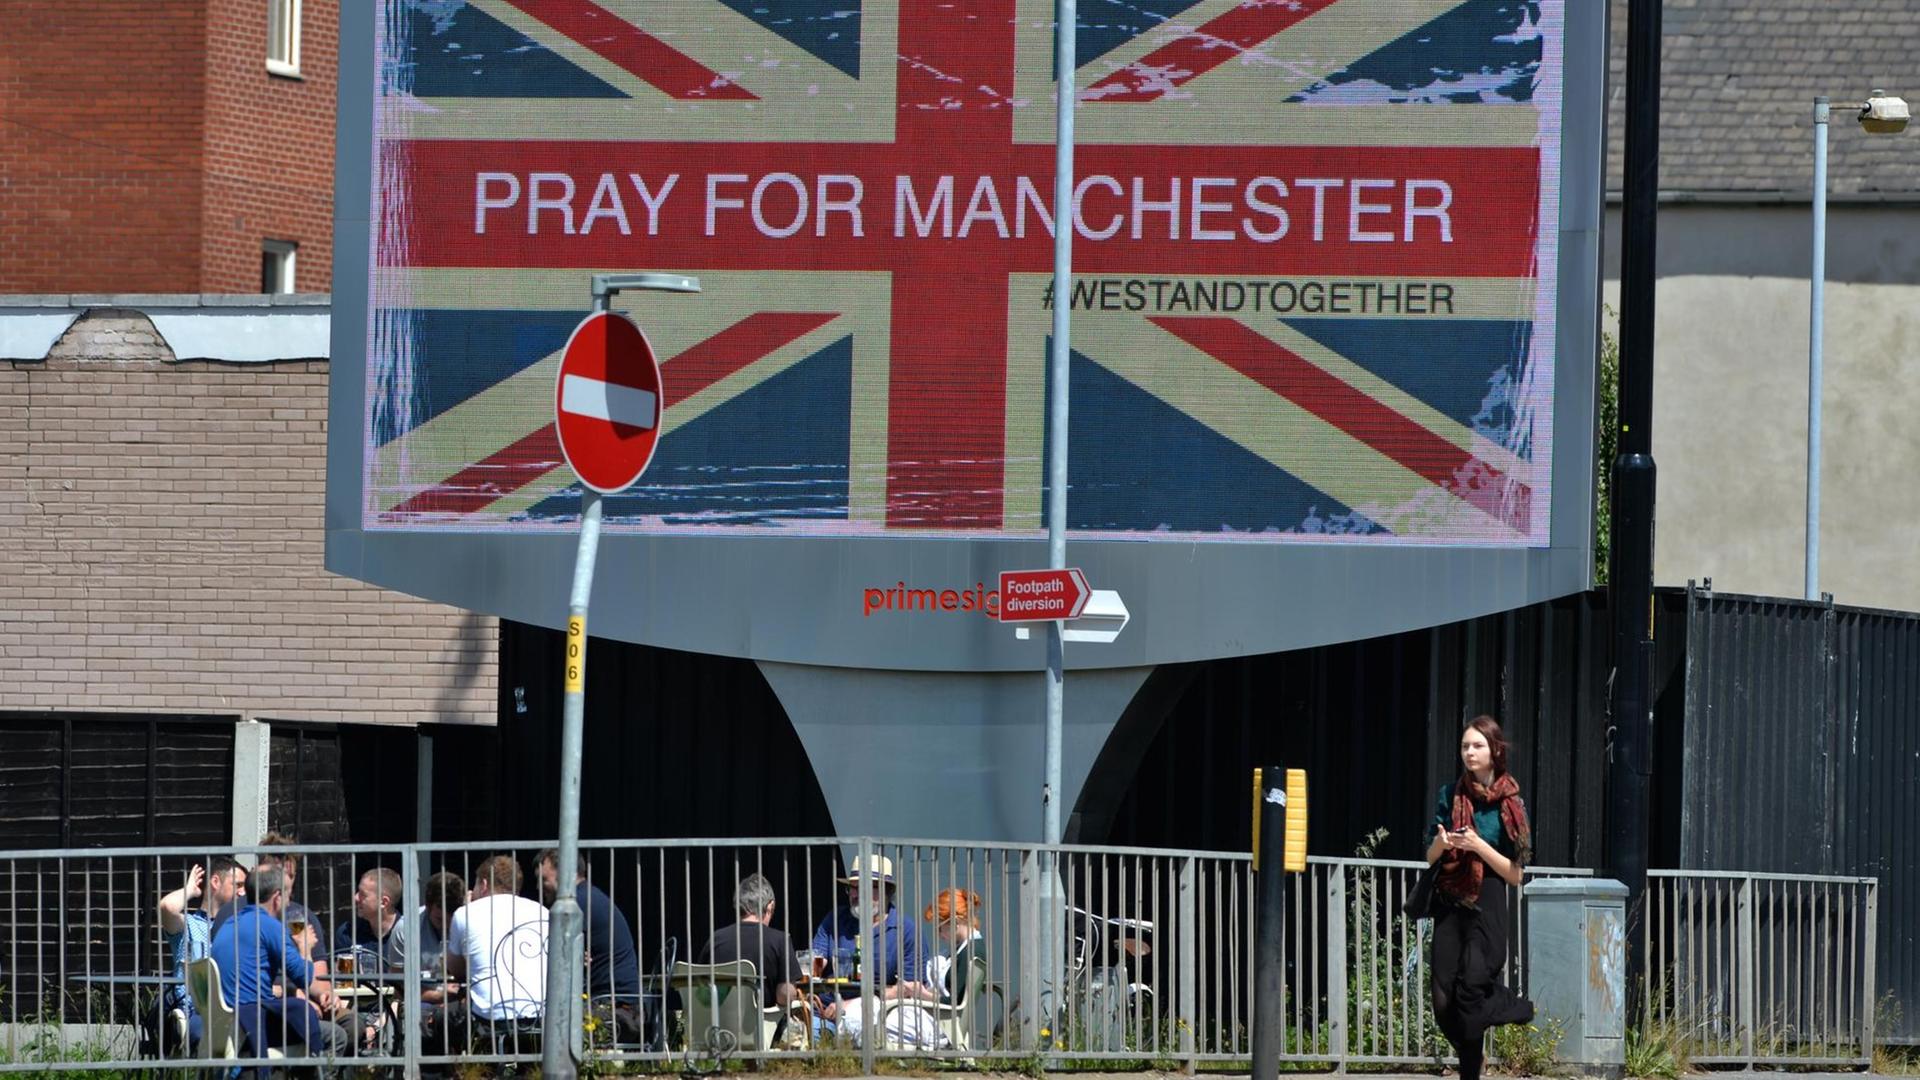 Auf einer elektronischen Werbetafel steht "Pray for Manchester auf dem Hintergrund einer britischen Flagge. 22 Menschen wurden bei einem Konzert der US-Sängerin Ariana Grande in Manchester getötet.